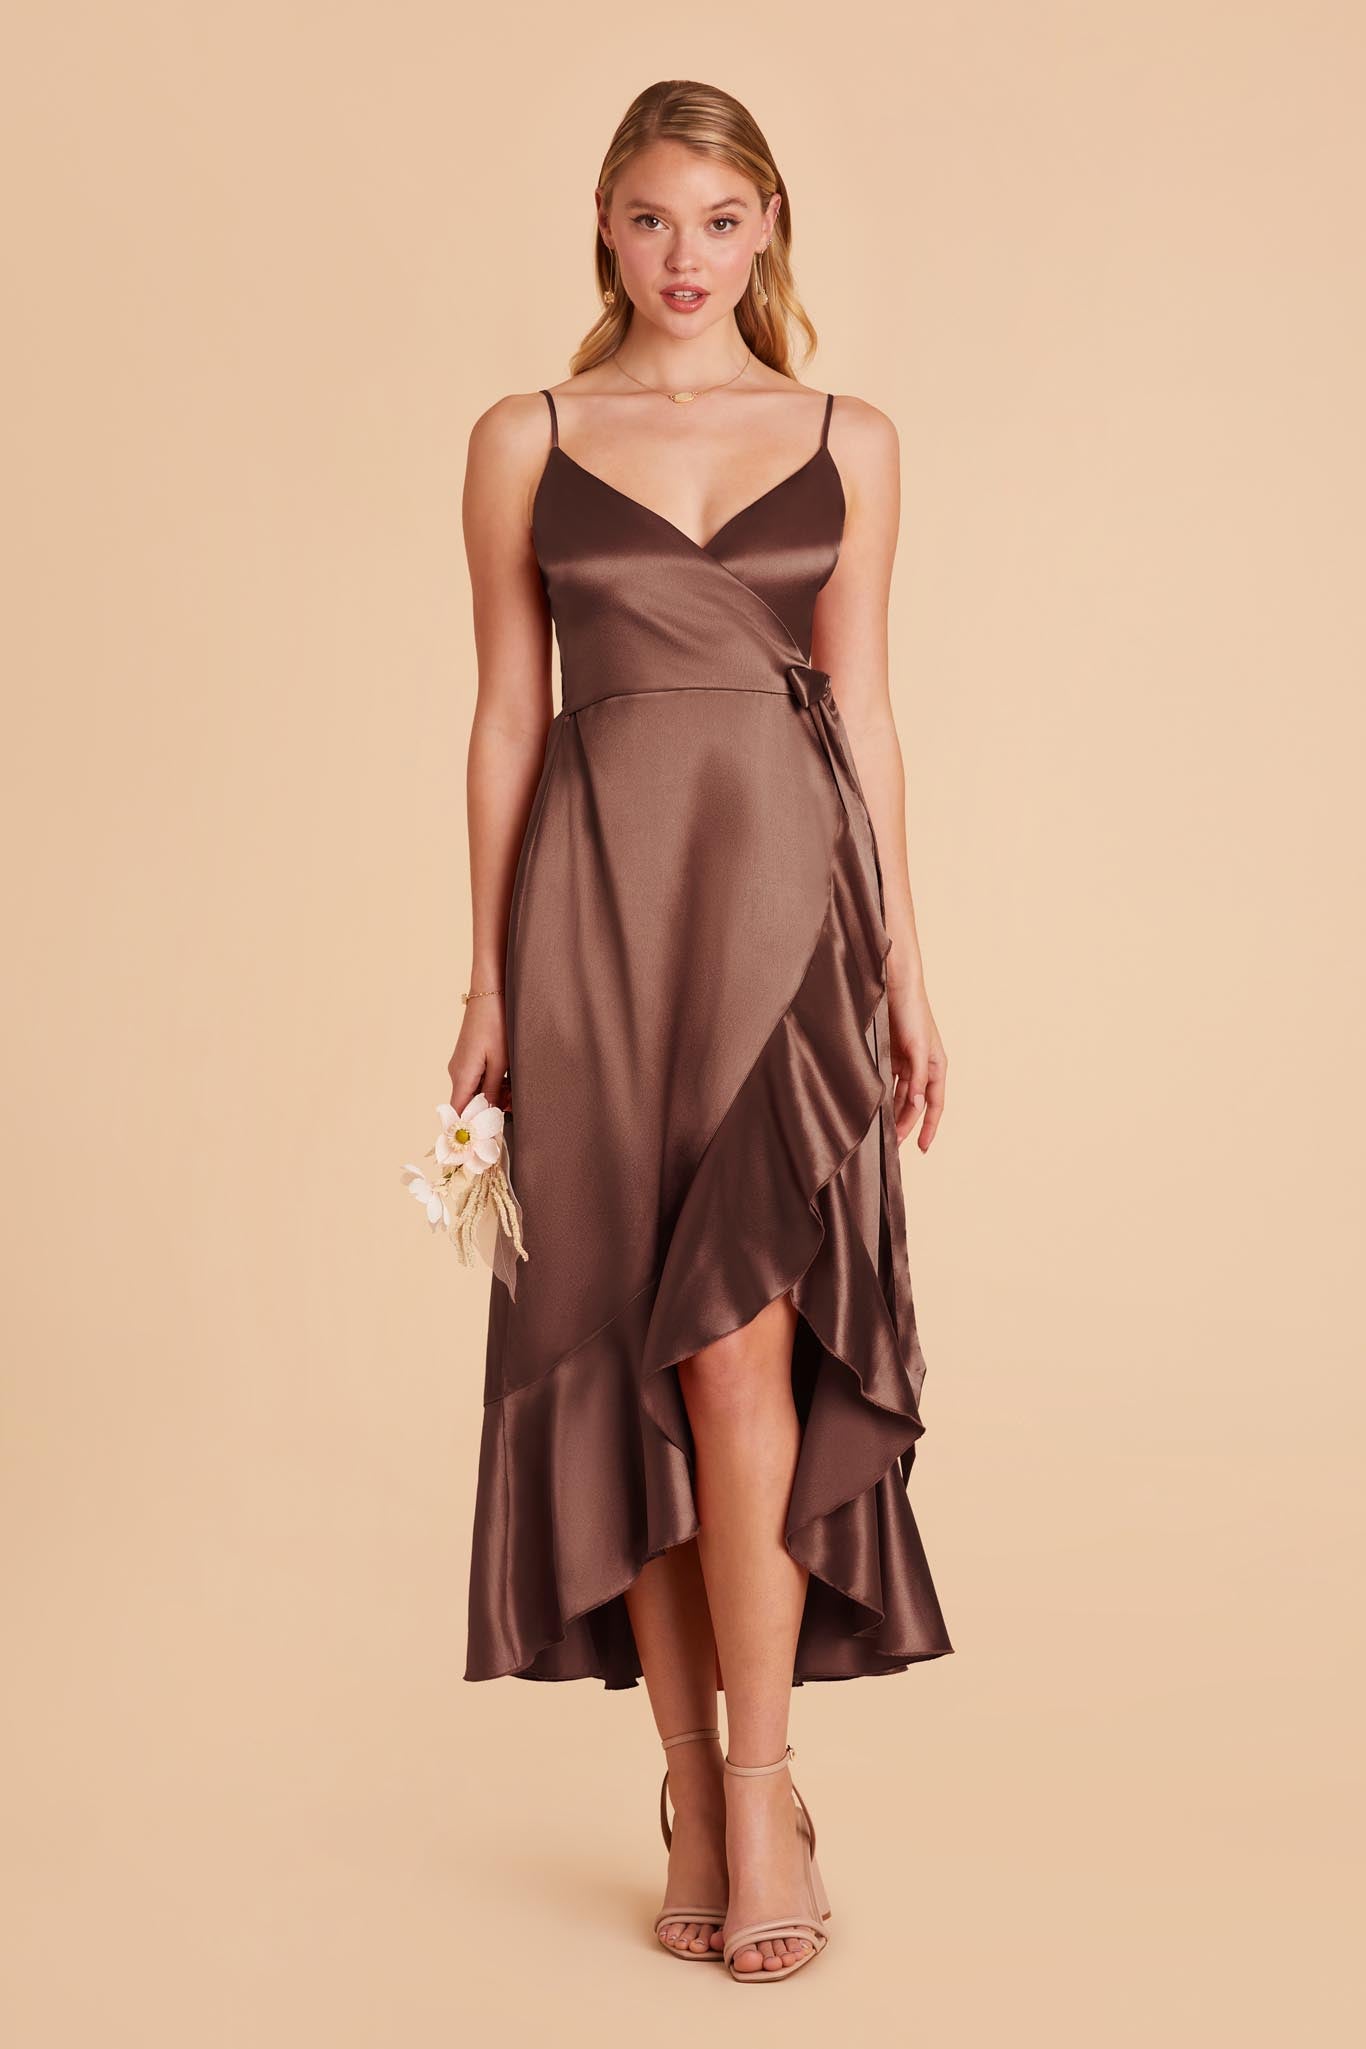 Chocolate Brown YC Midi Dress by Birdy Grey